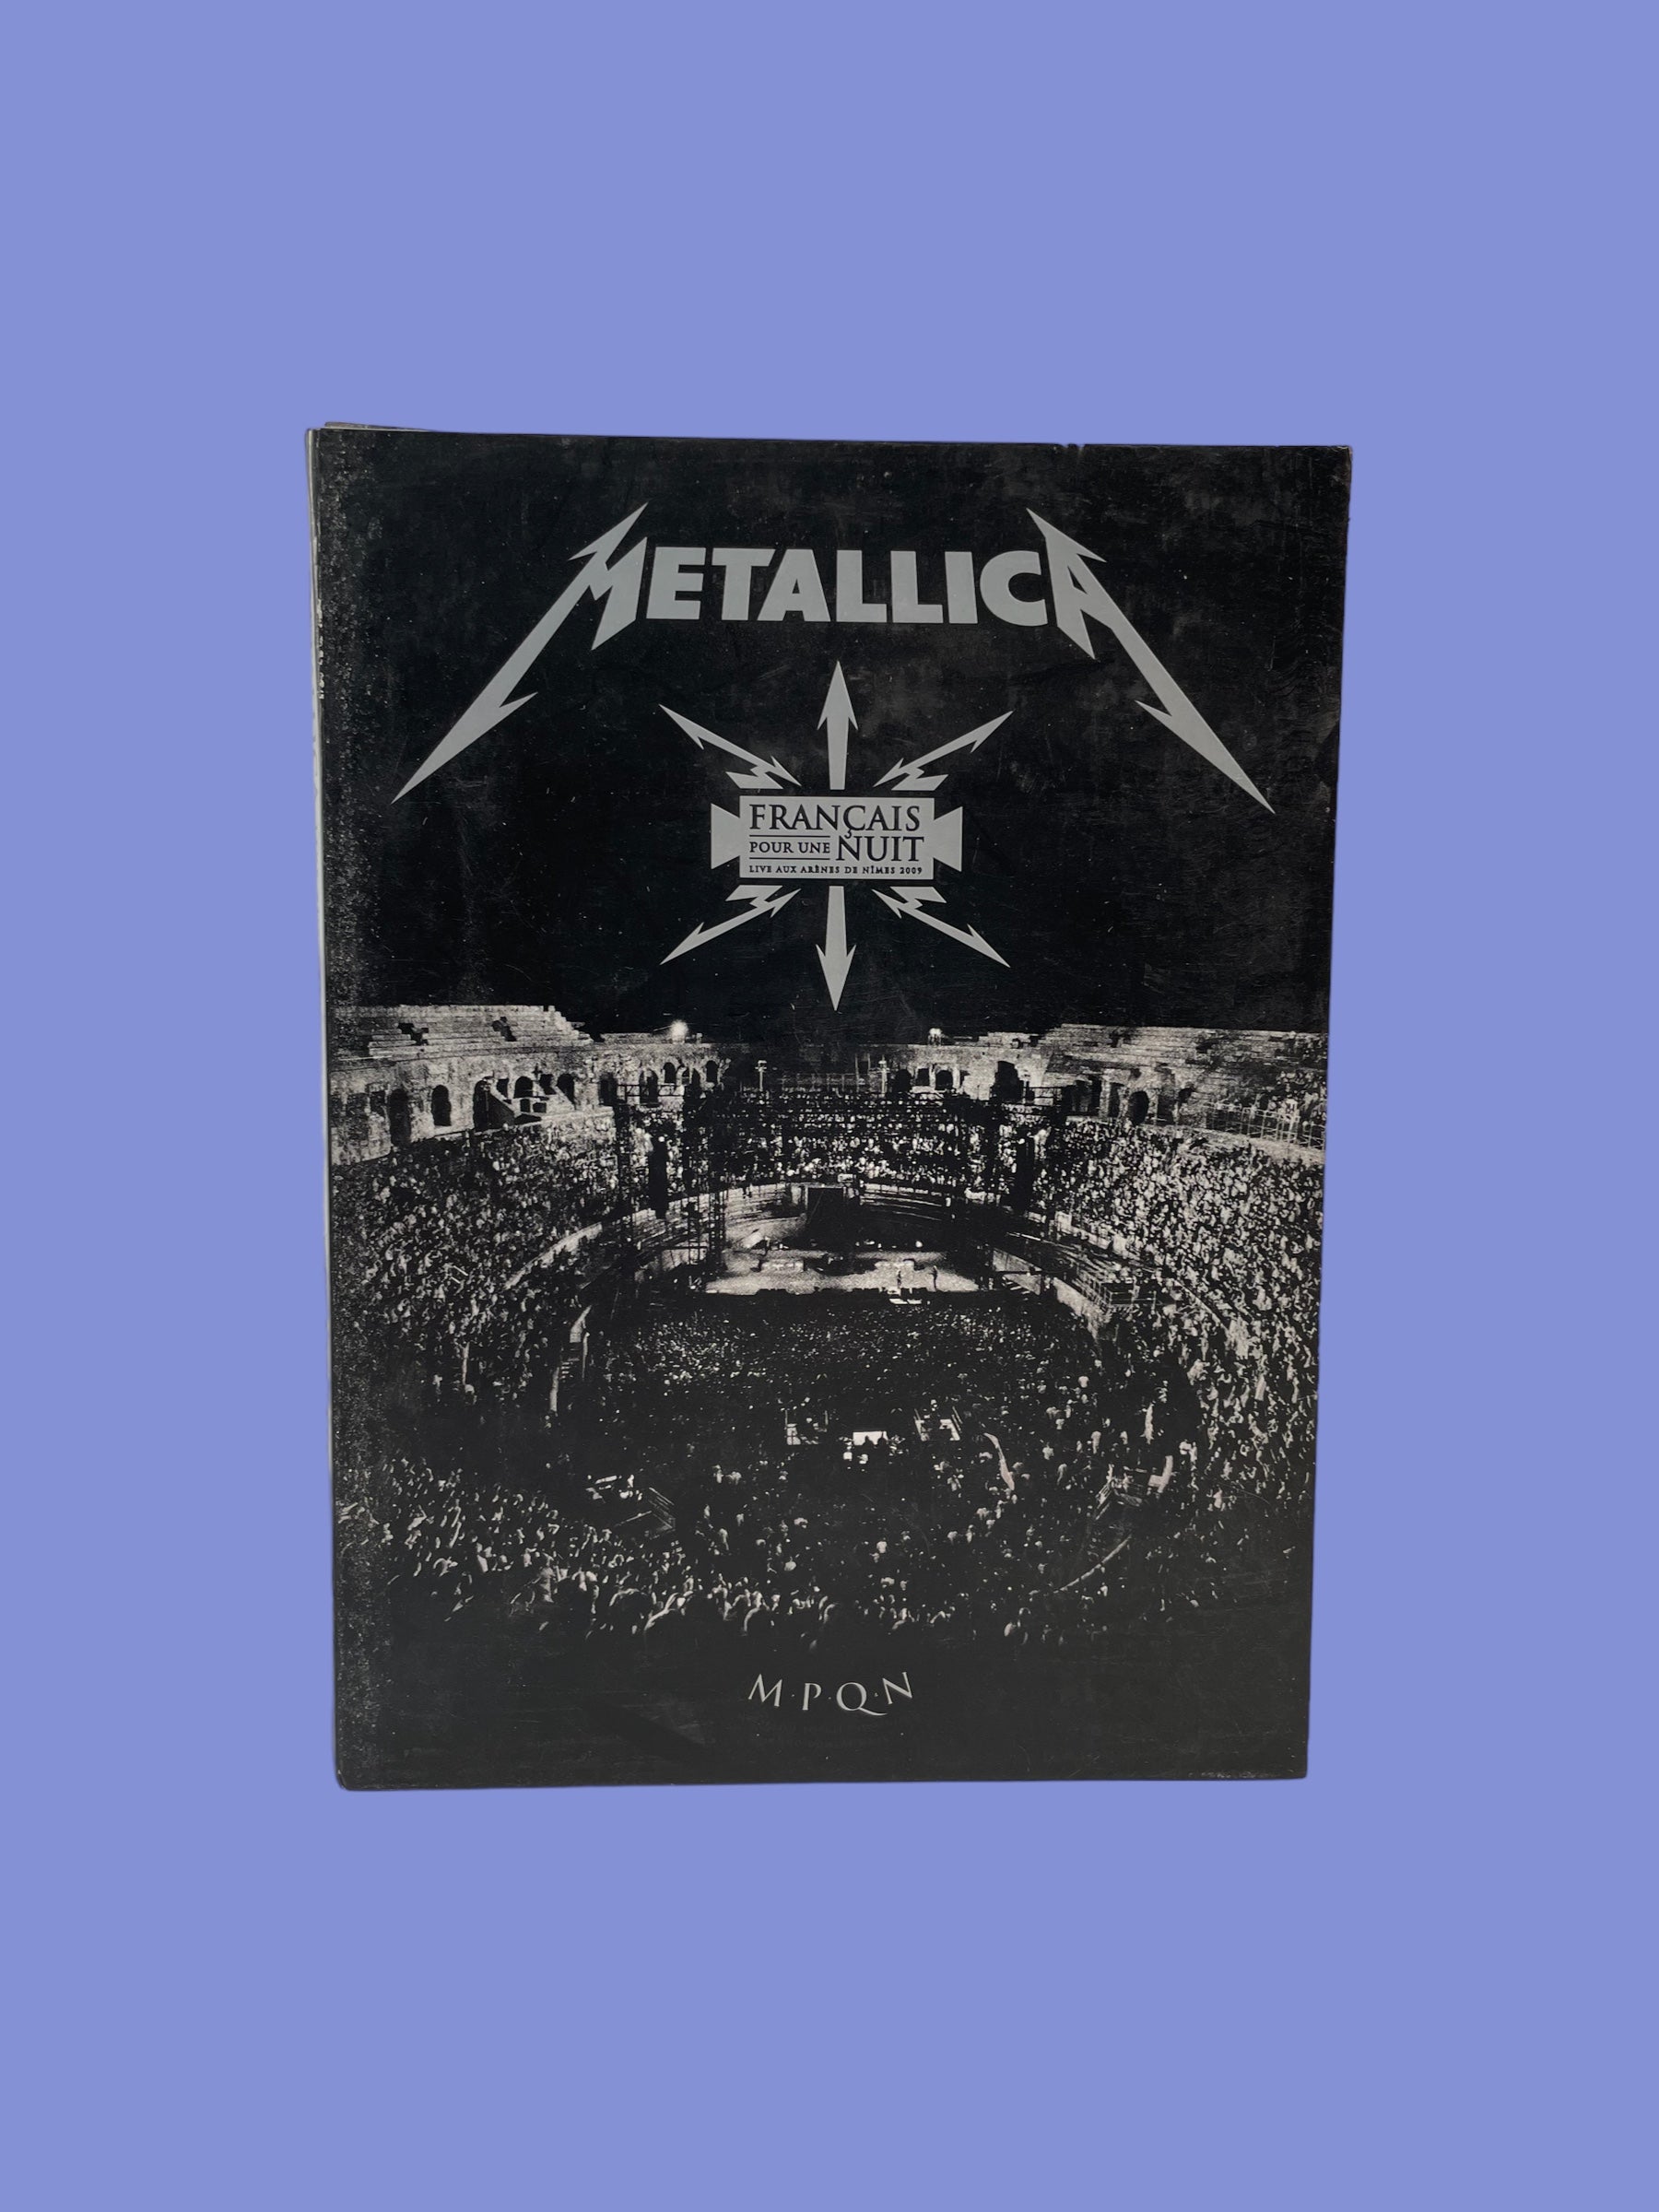 Metallica - DVD français pour une nuit